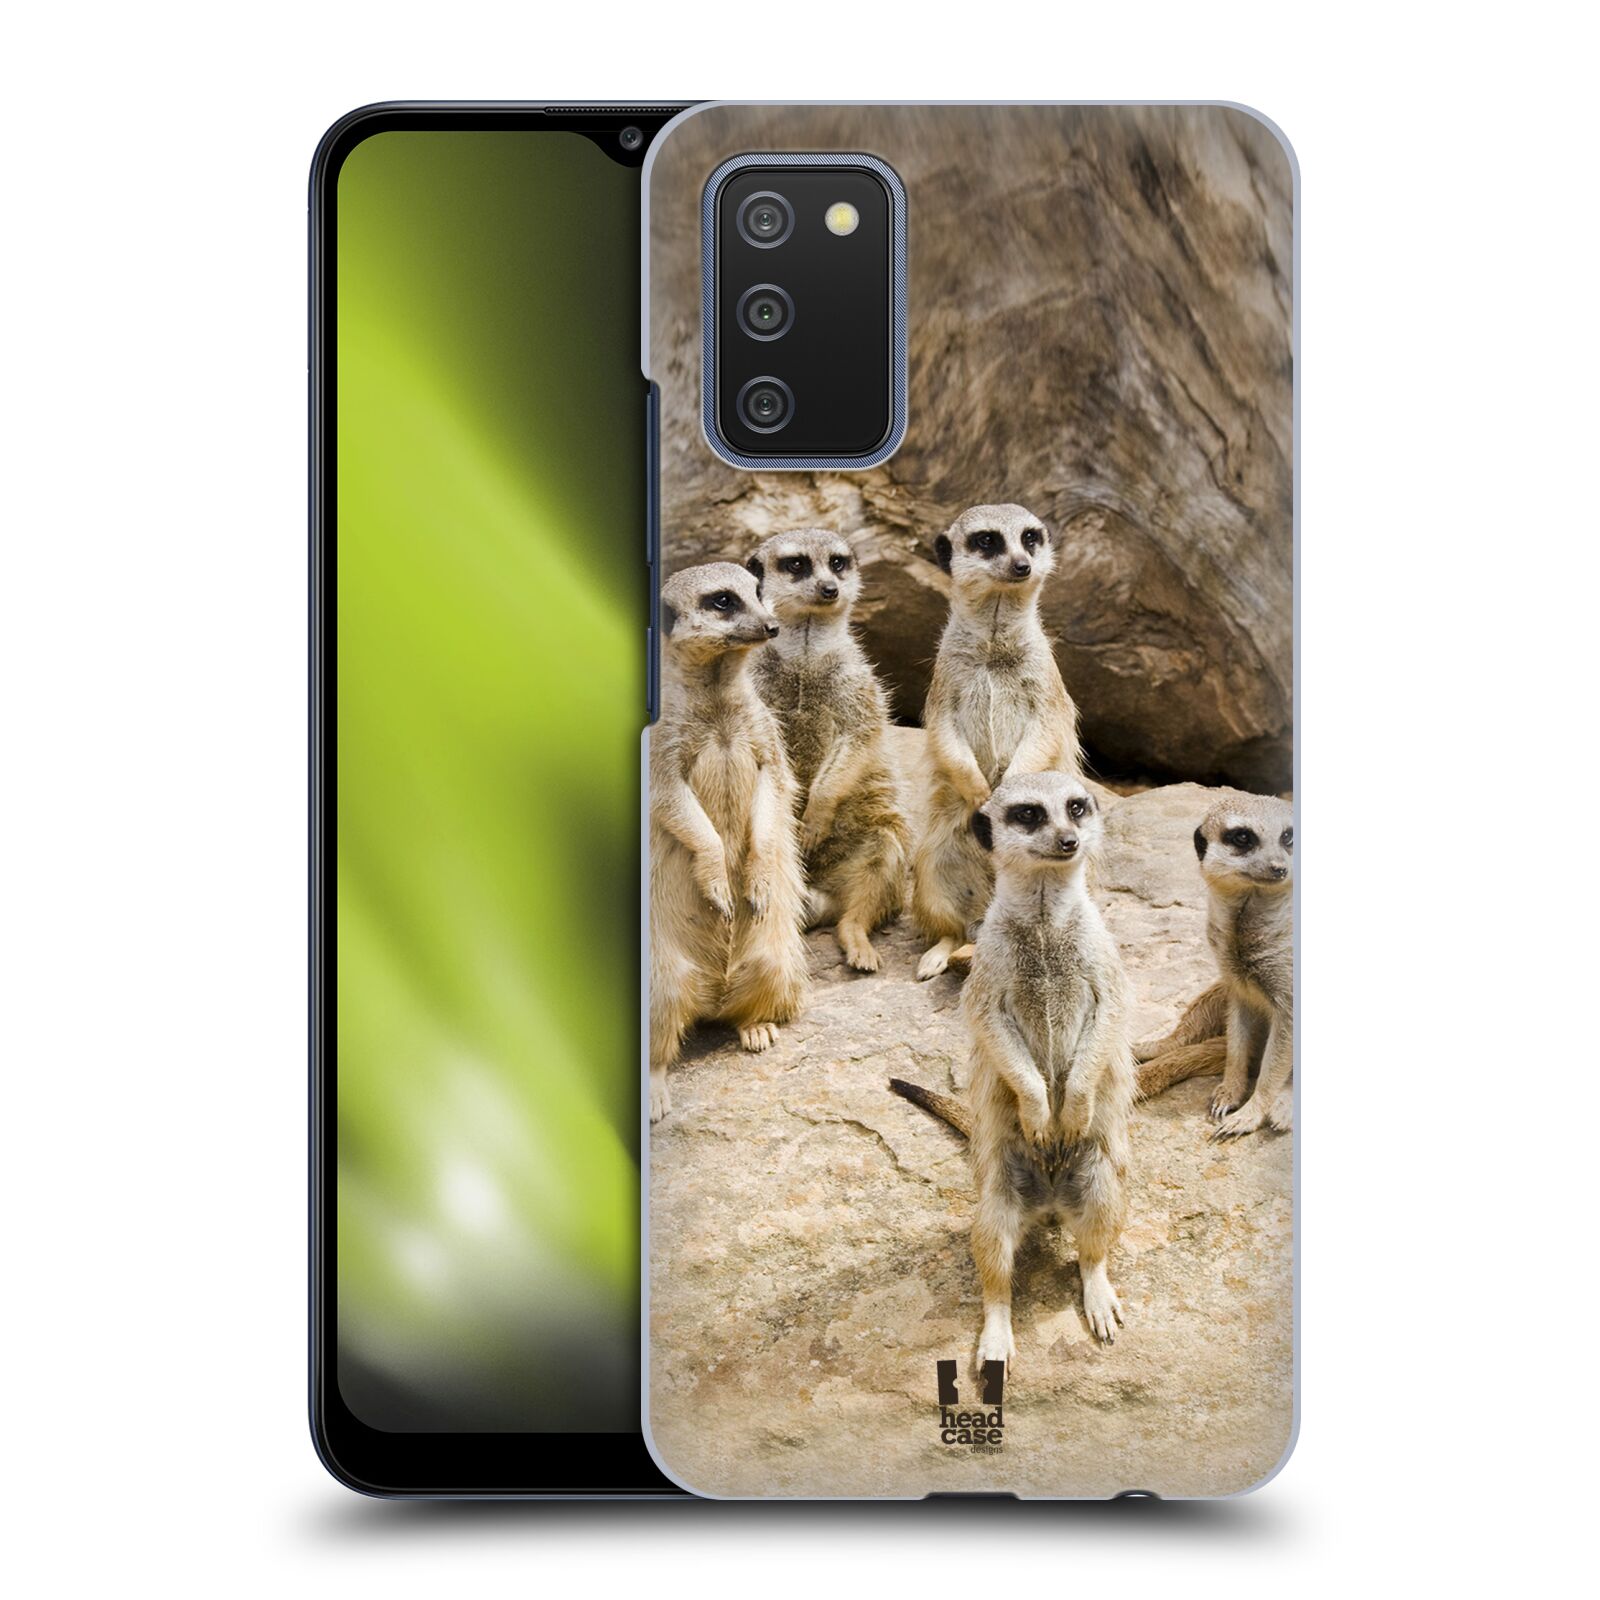 Zadní obal pro mobil Samsung Galaxy A02s - HEAD CASE - Svět zvířat roztomilé surikaty